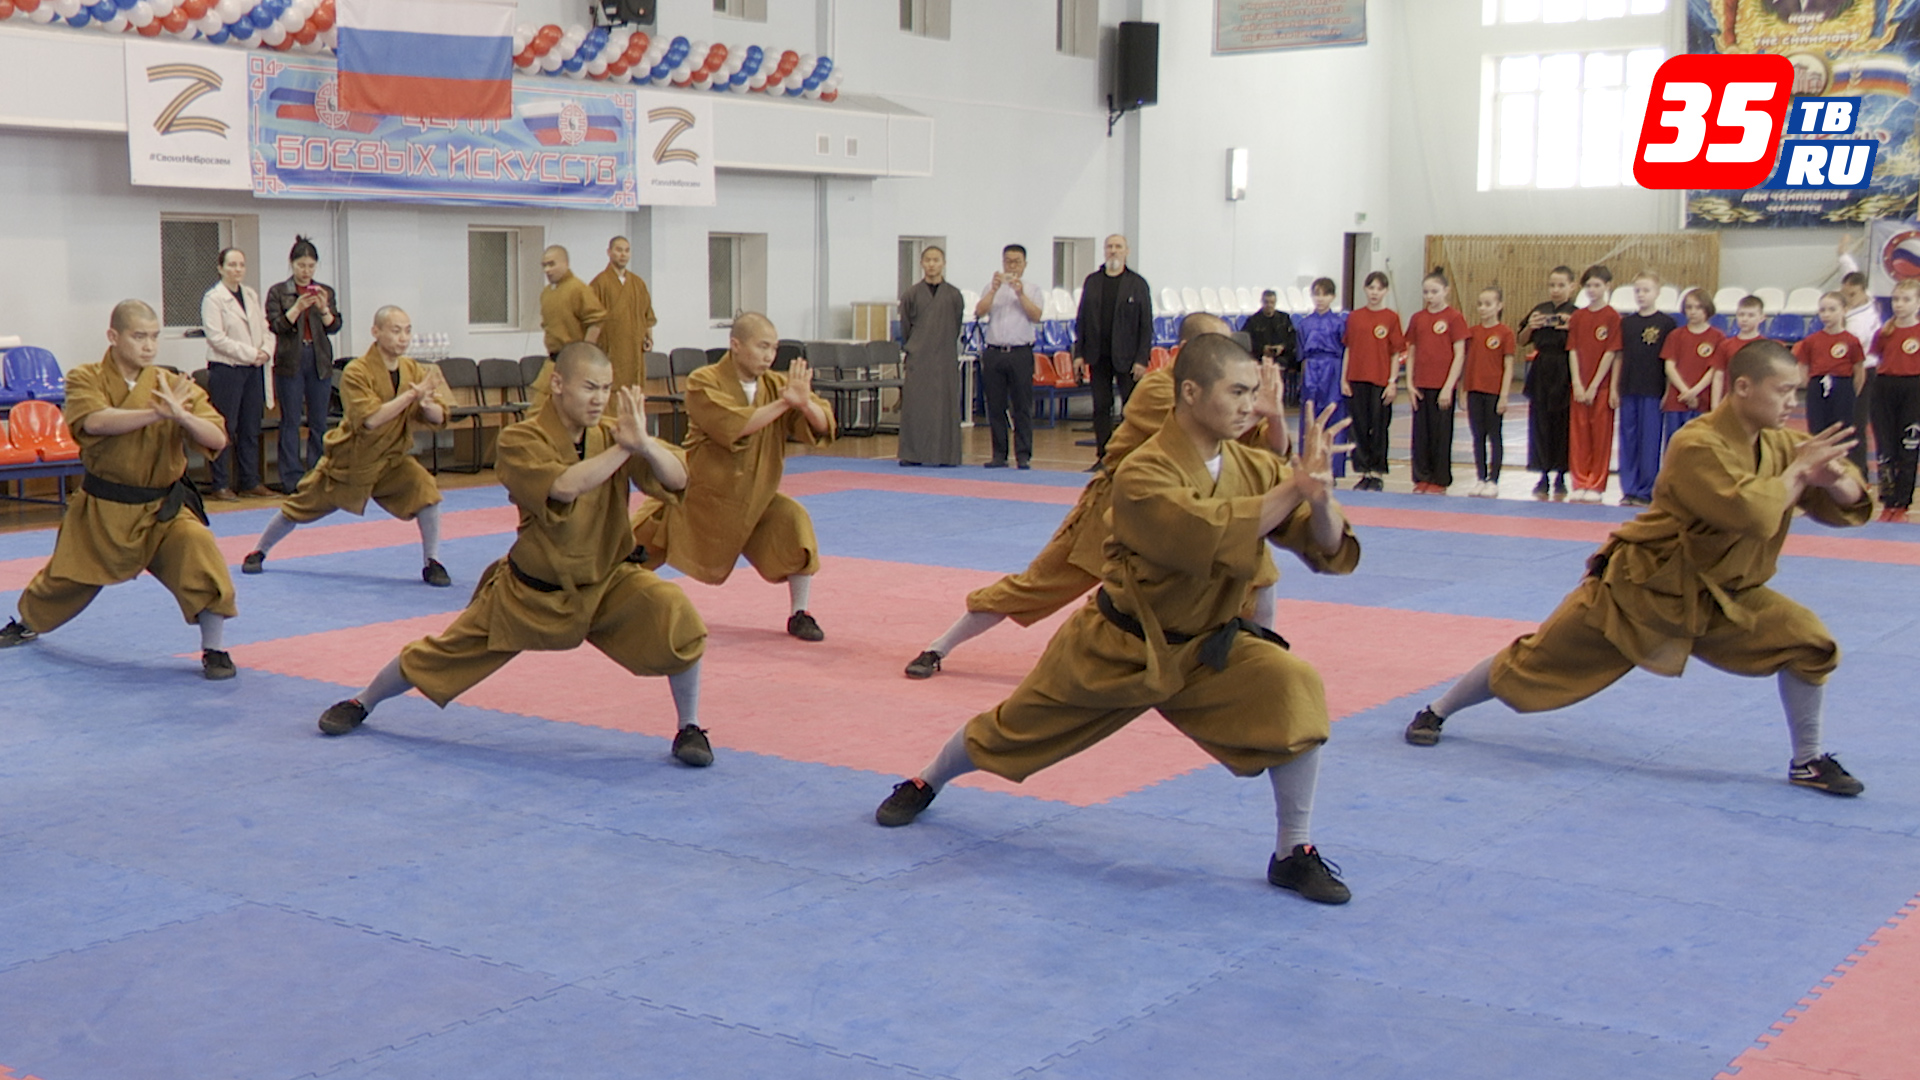 Шаолиньские монахи дали мастер-класс для череповецких спортсменов ЦБИ